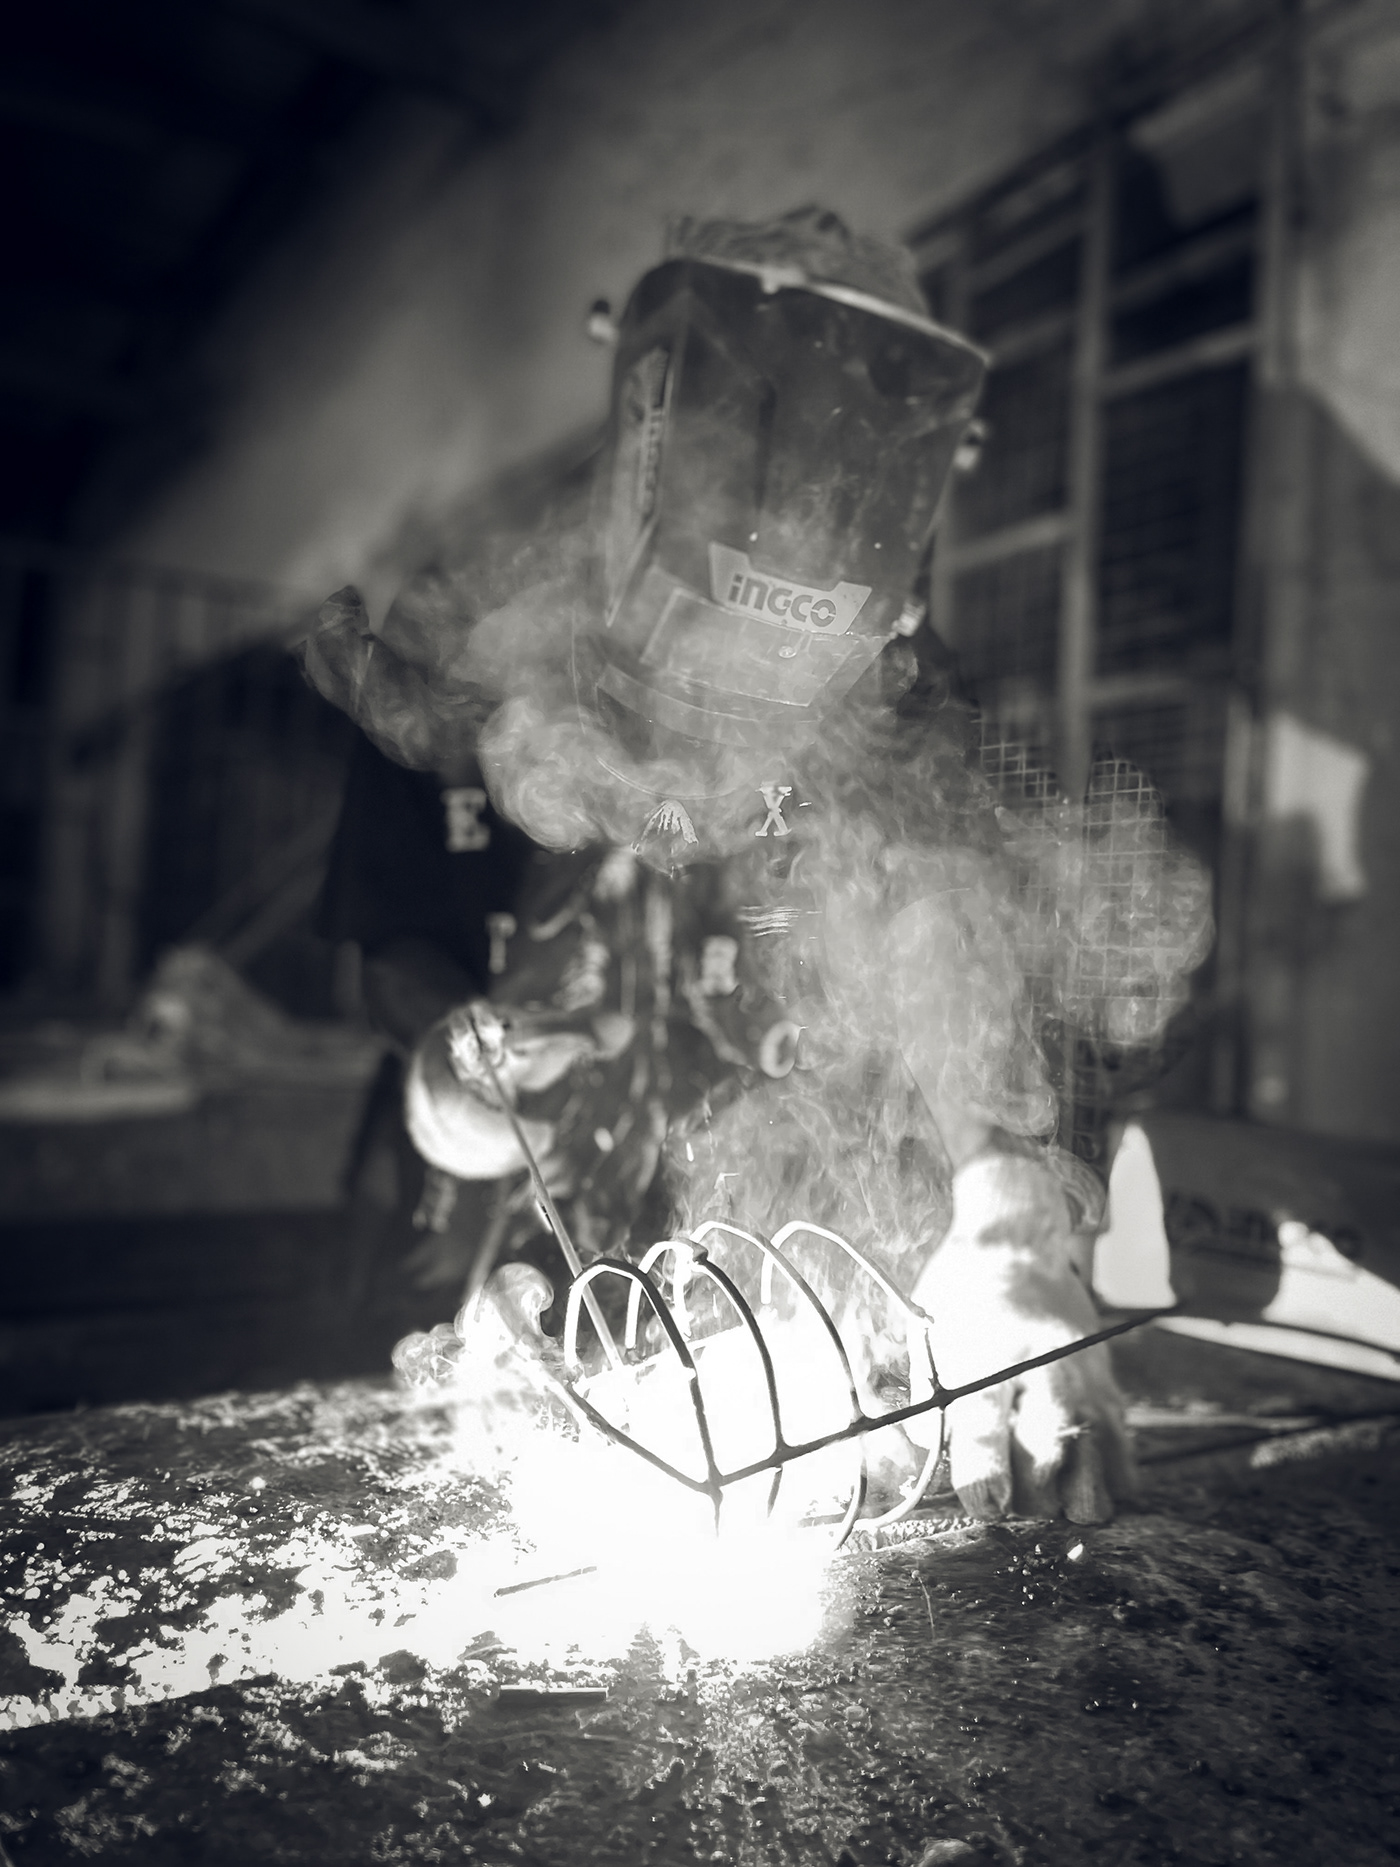 welding Welding Art Workers photo documentary iPhone photography Ghana Helmet